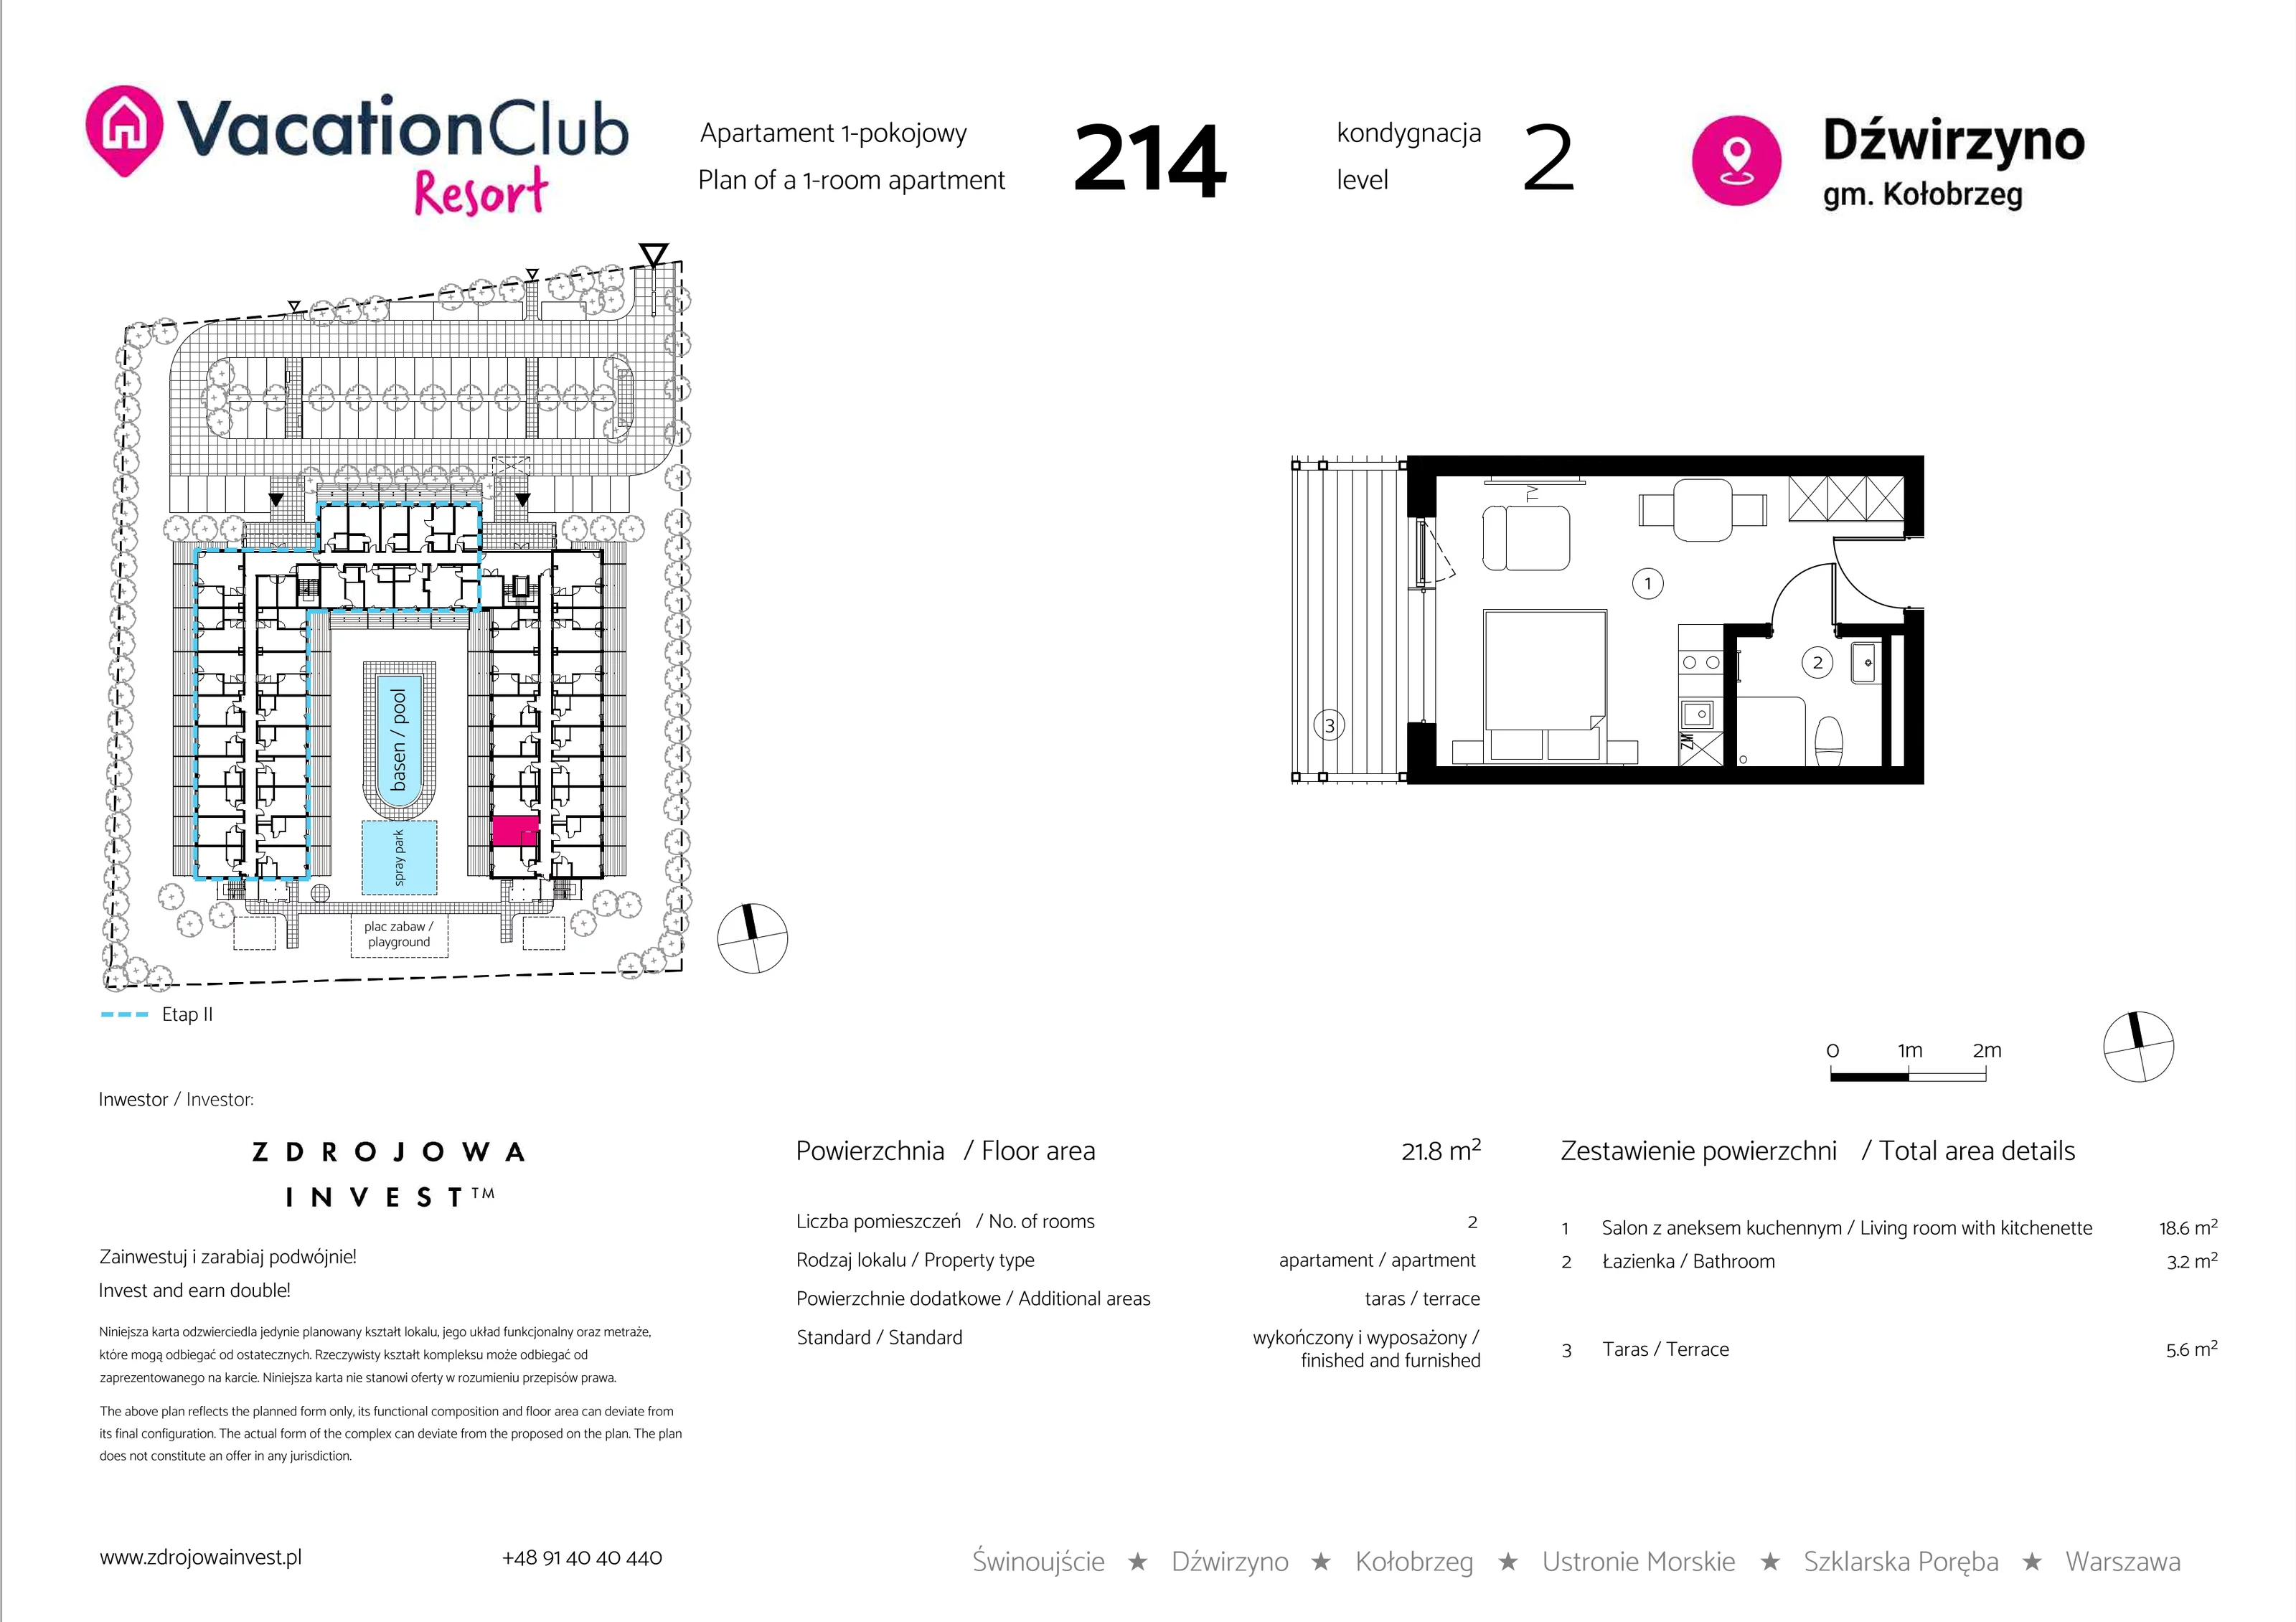 Apartament 21,80 m², piętro 1, oferta nr 214, Vacation Club Resort - apartamenty wakacyjne, Dźwirzyno, ul. Wczasowa 8